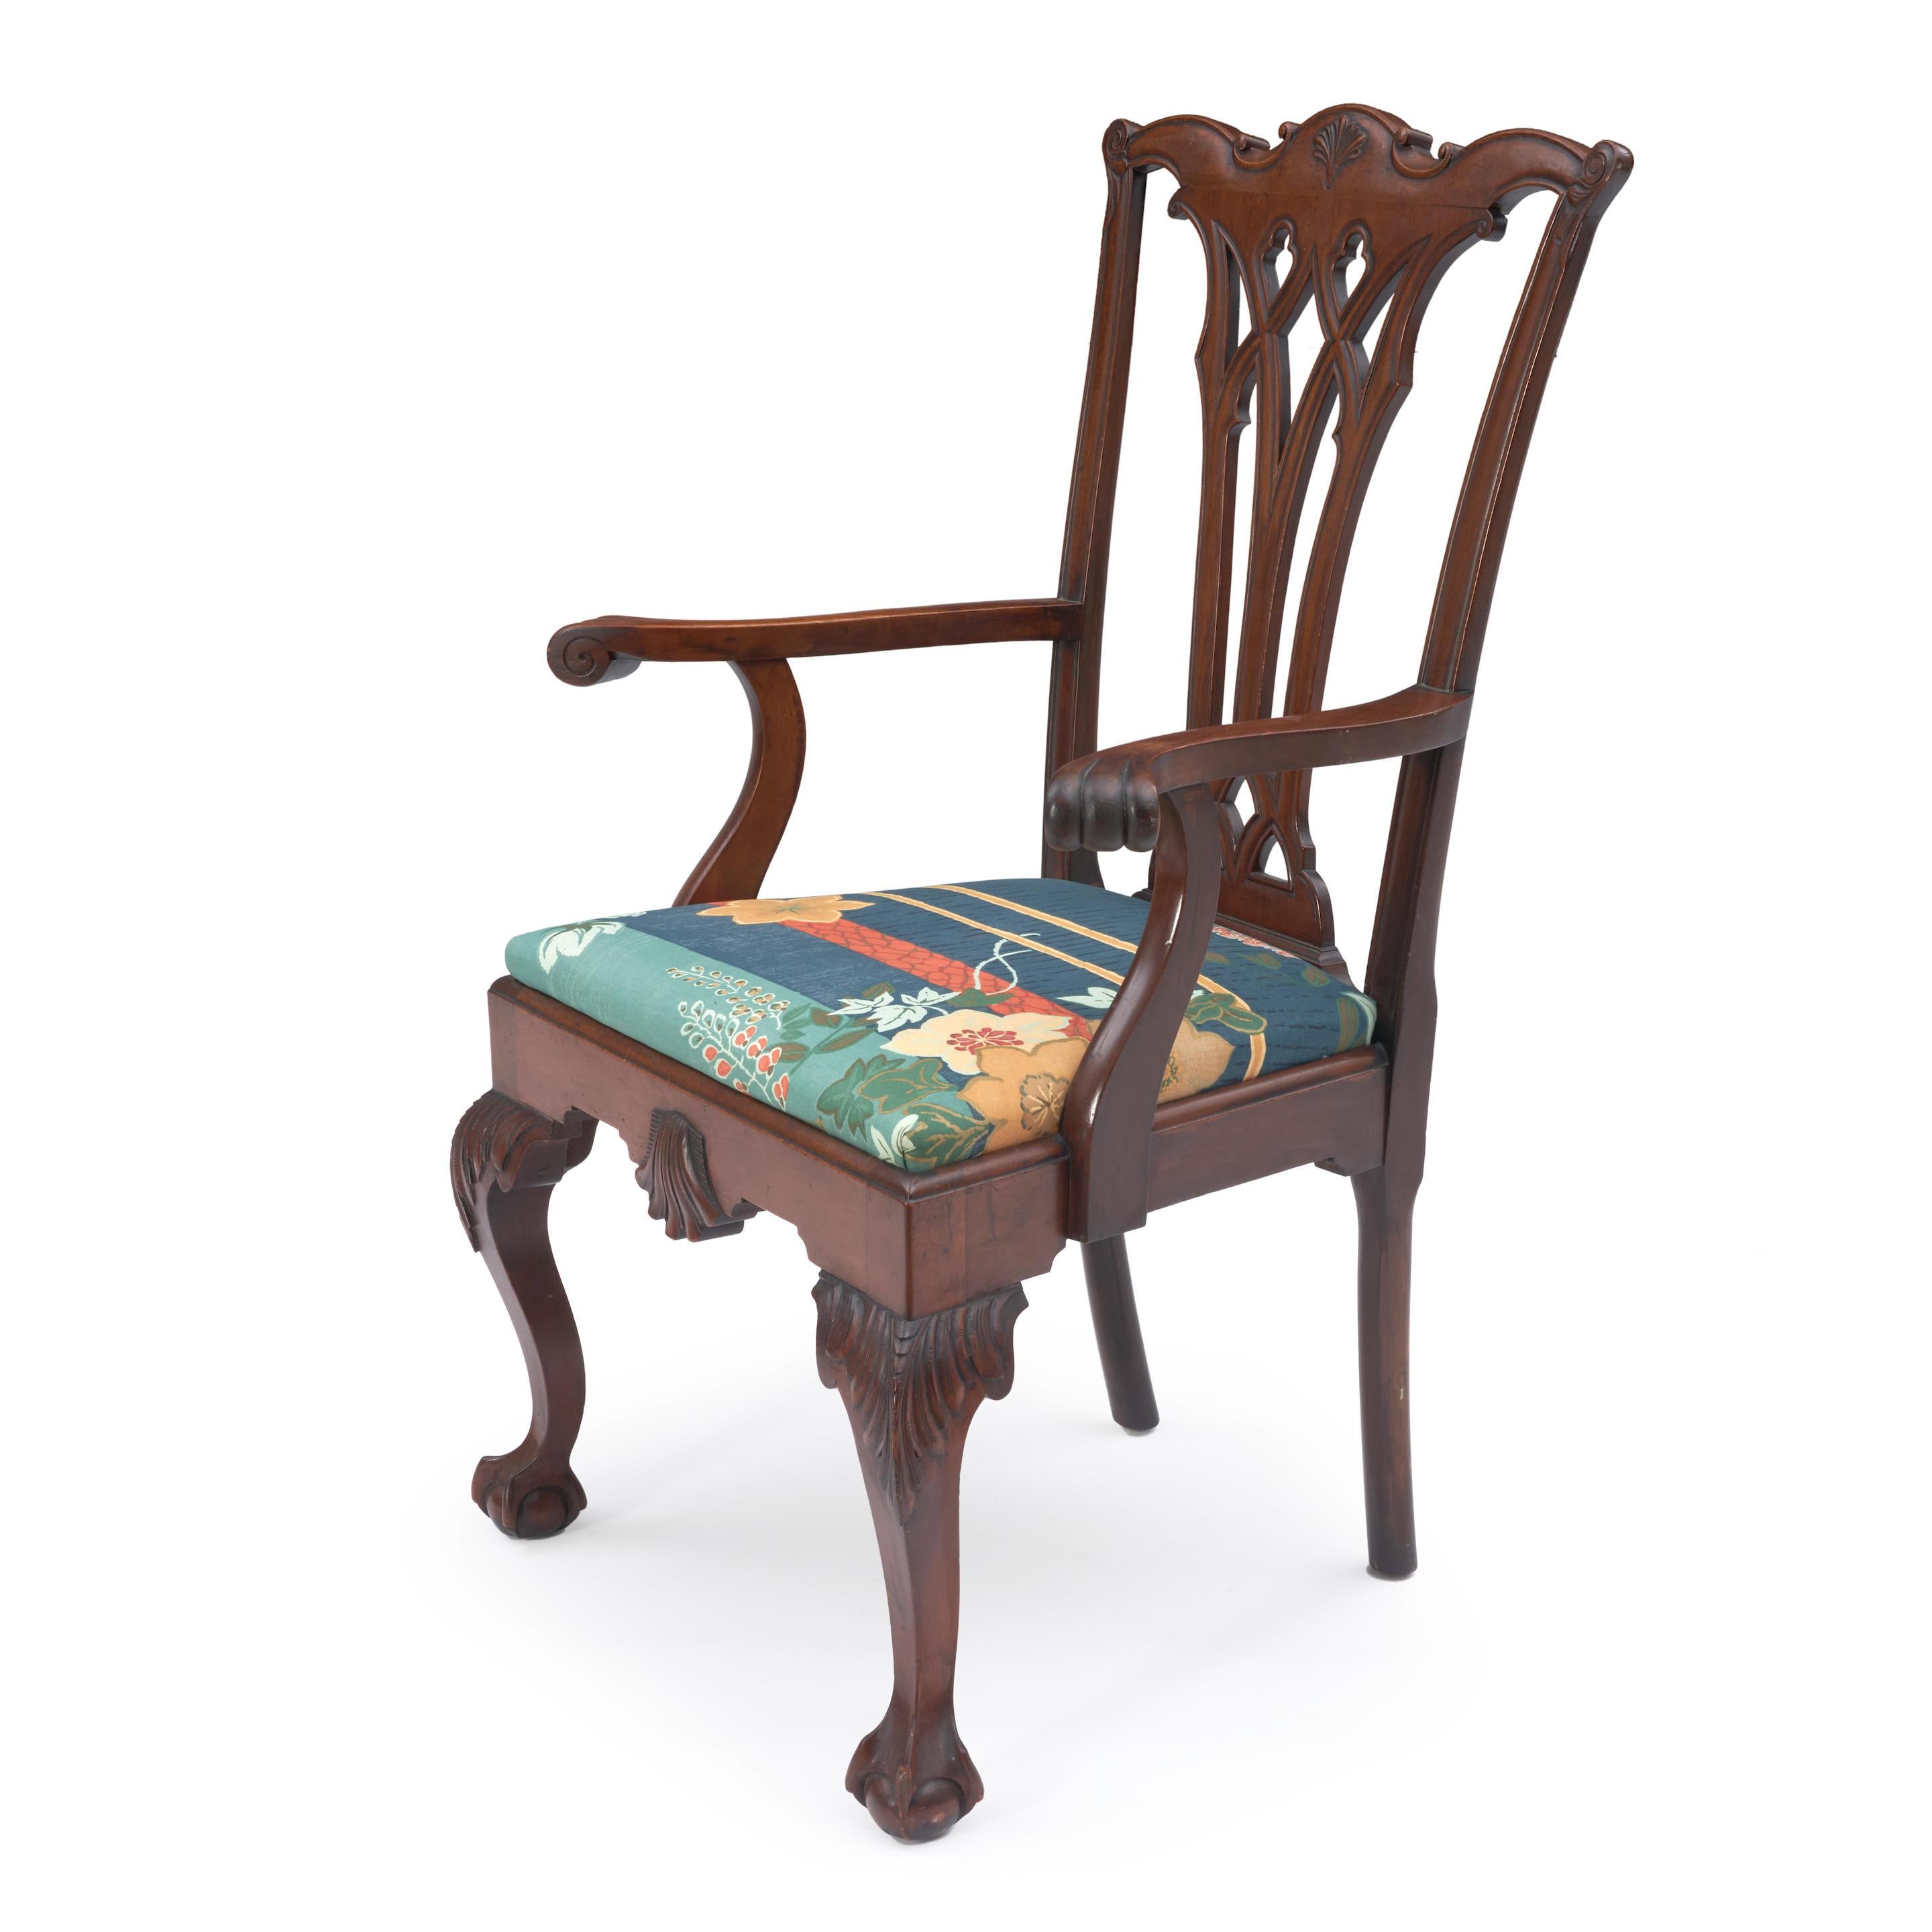 Geschnitzter Mahagoni-Sessel im Chippendale-Stil mit geschnitzten Knien, Klauen- und Kugelfüßen und einer durchbrochenen vasiformen Rückenlehne, ein großer Stuhl und sehr bequem zum Sitzen. 
Ht. 40, Wd. 26, Dp. 20 in.
